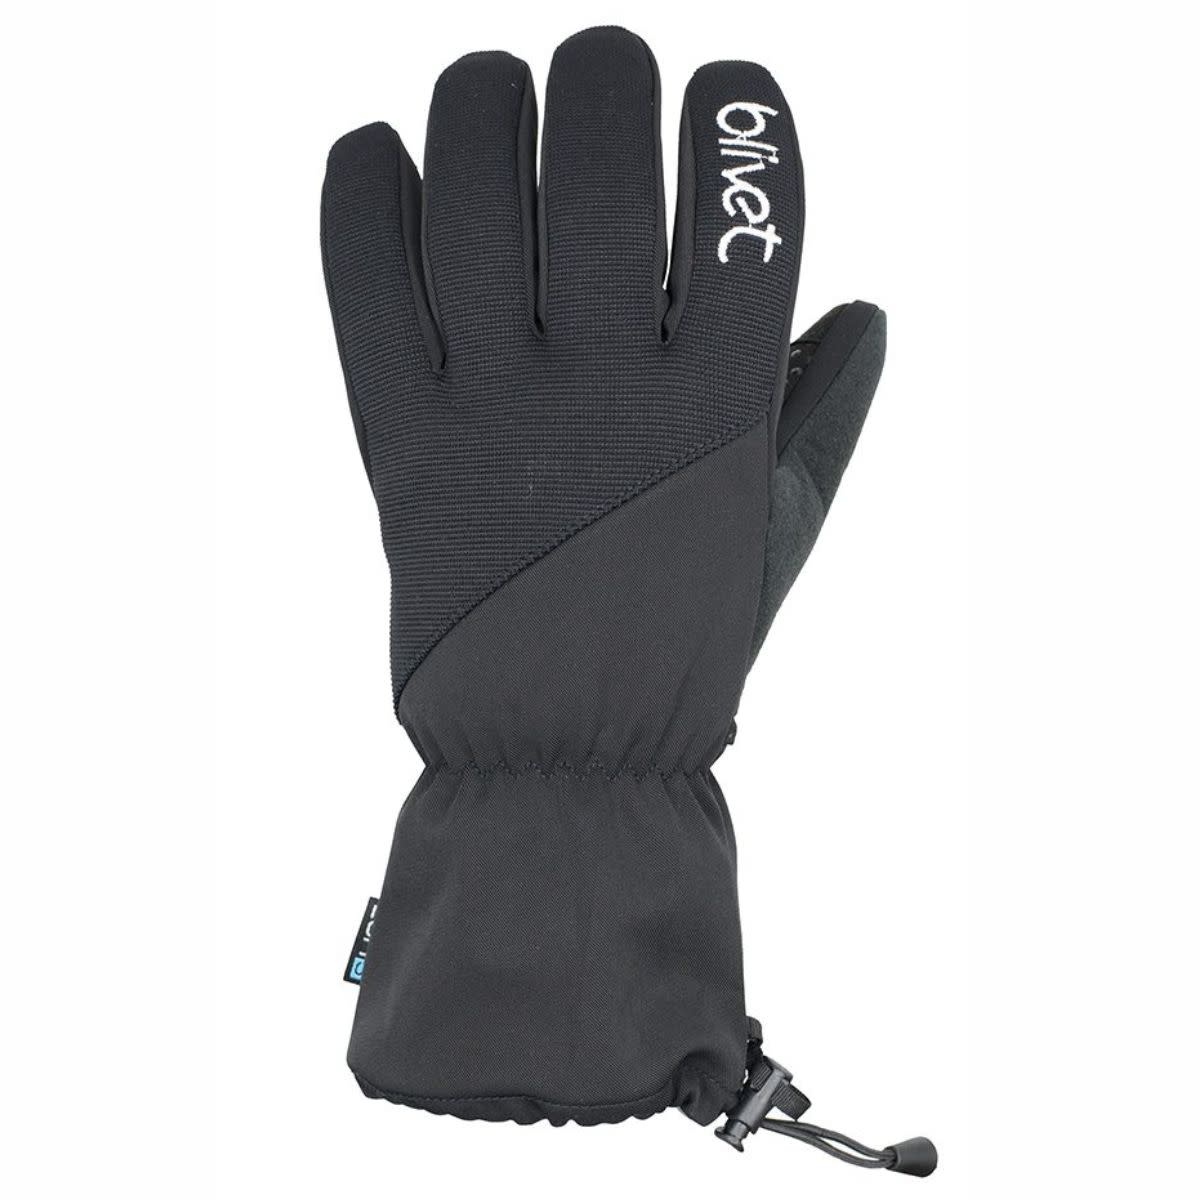 Gloves , Blivet Lofi 5 gloves